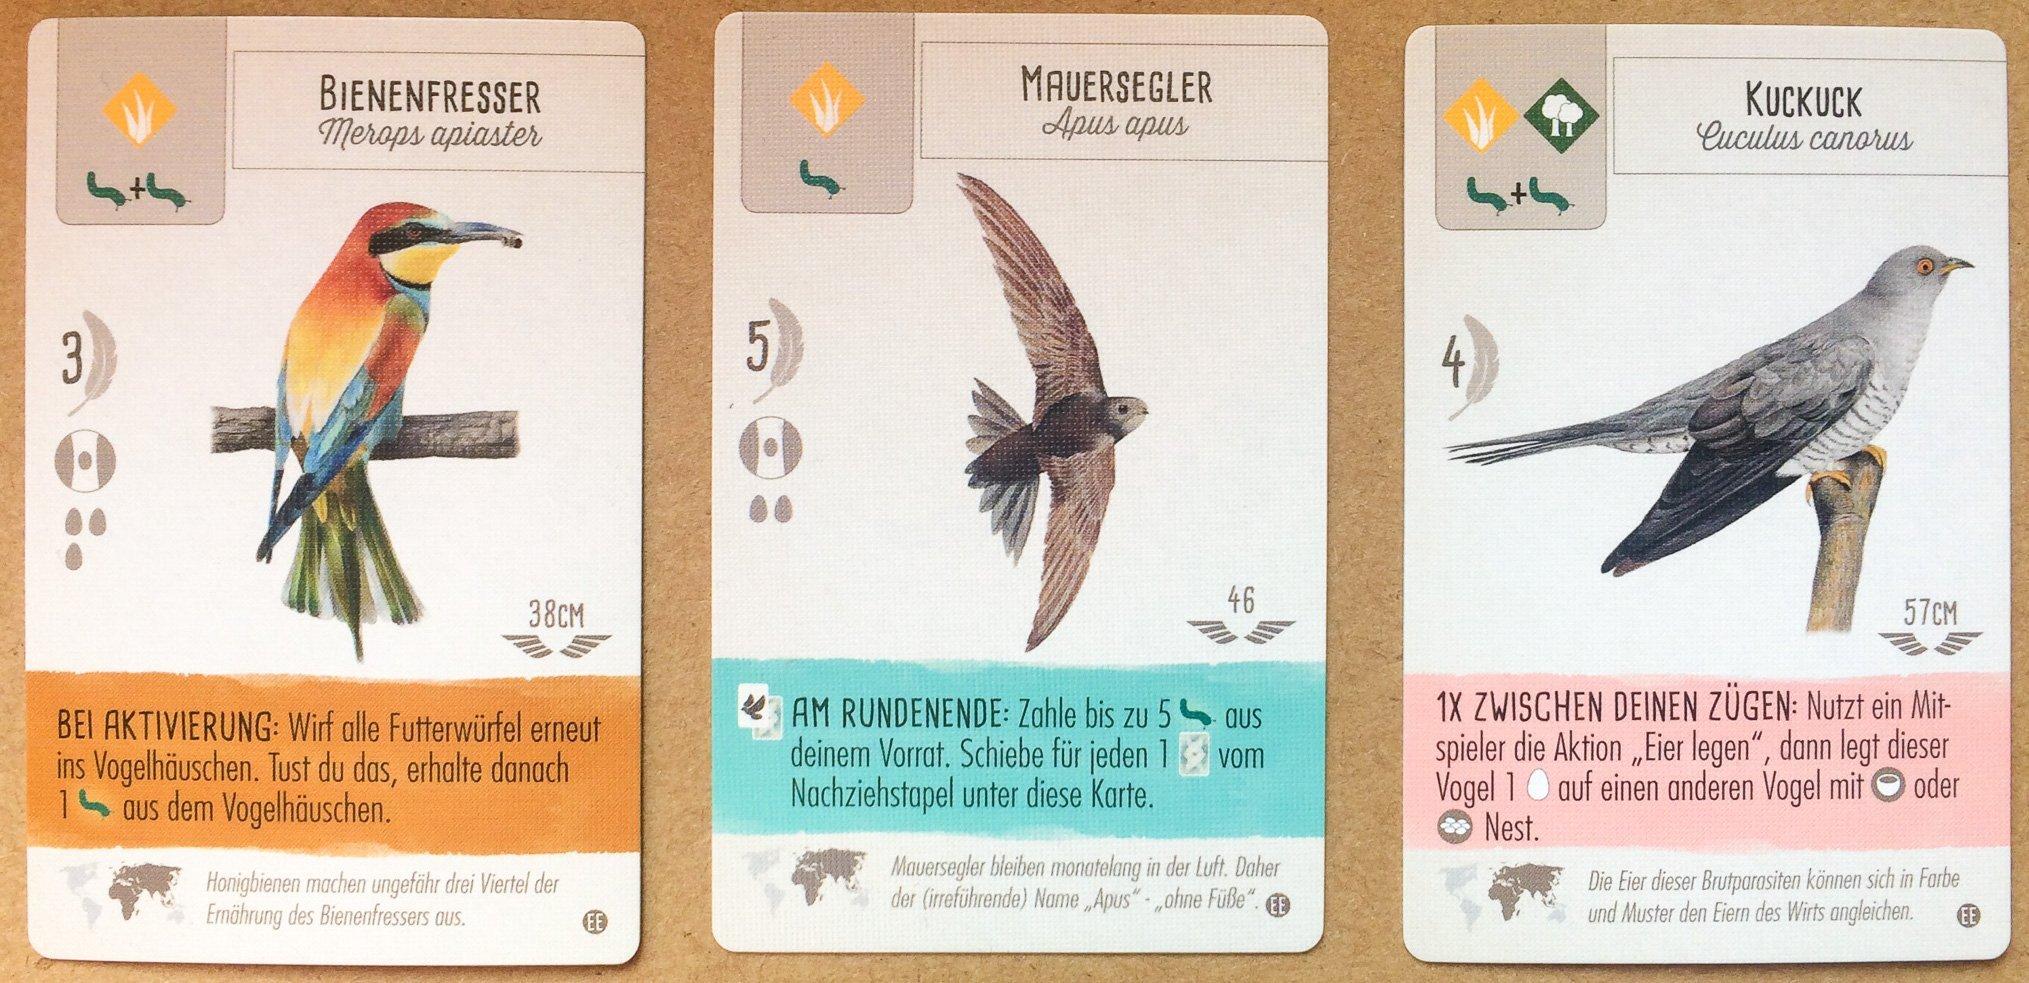 Drei Karten aus dem Spiel Flügelschlag: Bienenfresser, Mauersegler, Kuckuck